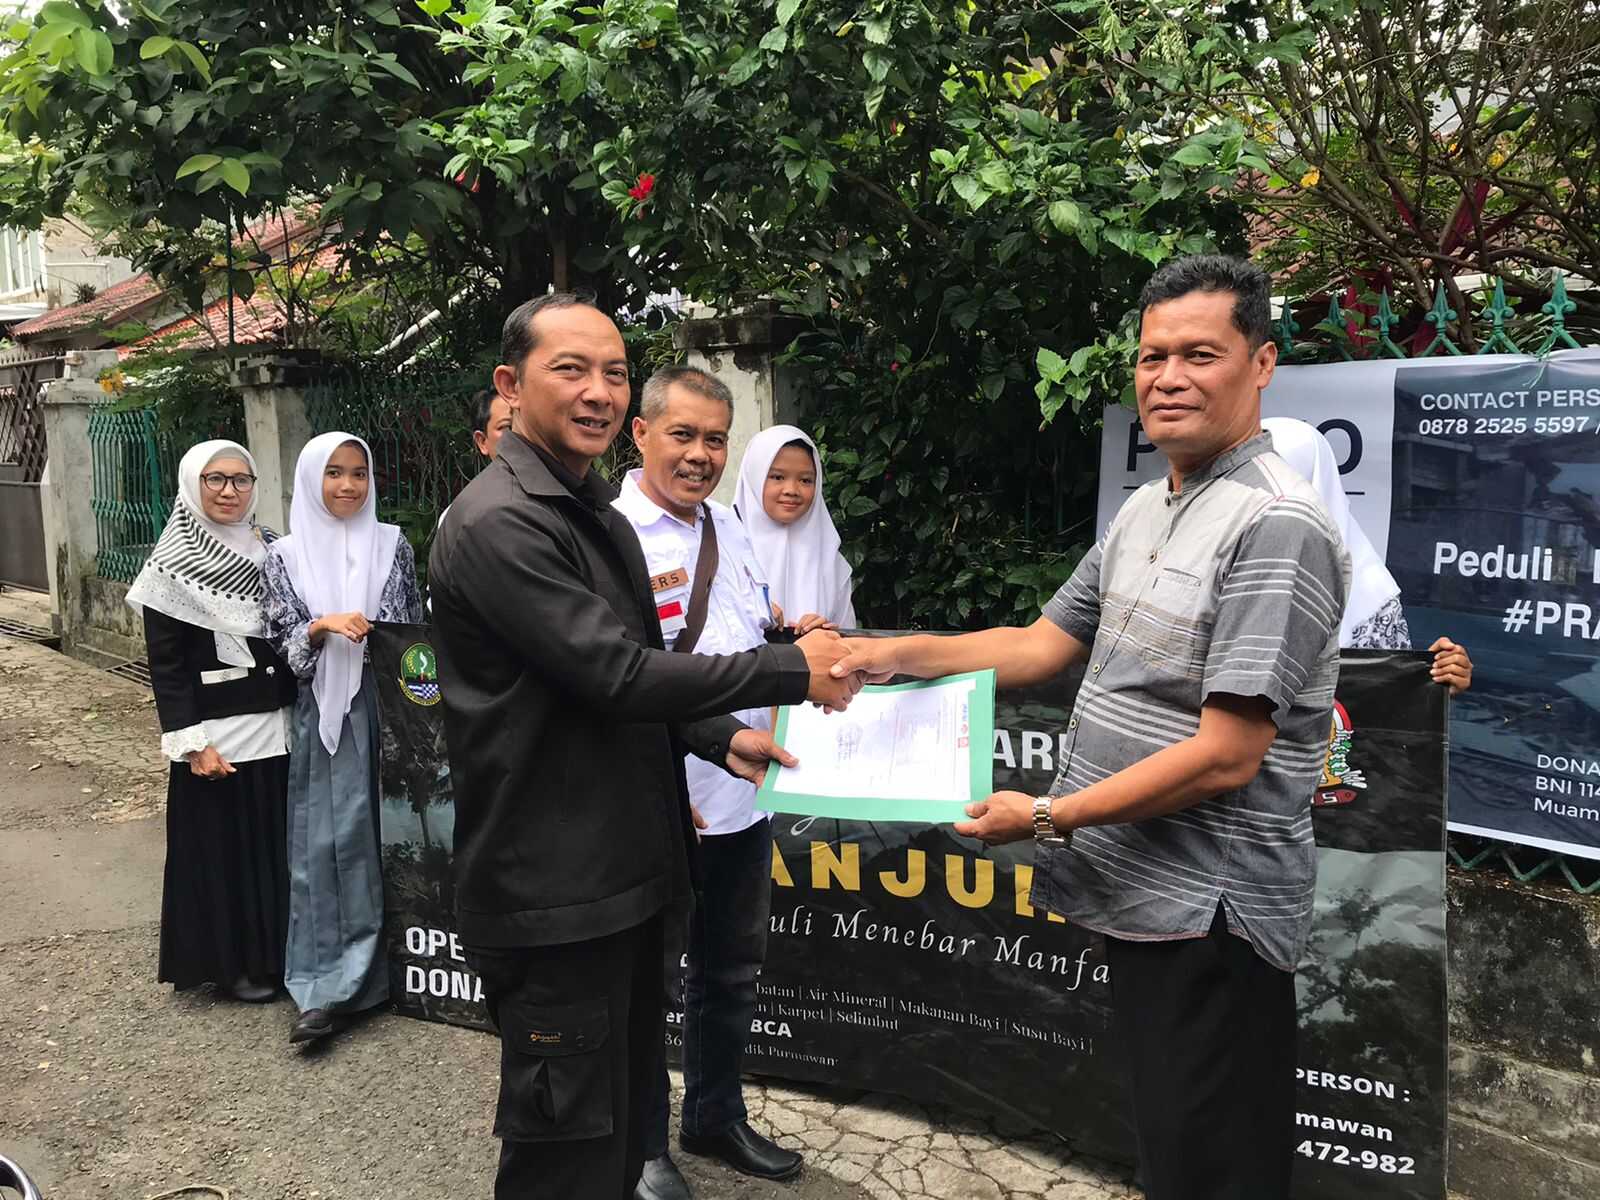 Bersama JMSI, SMAN 18 Garut Distribusikan Bantuan Bagi Korban Gempa Cianjur